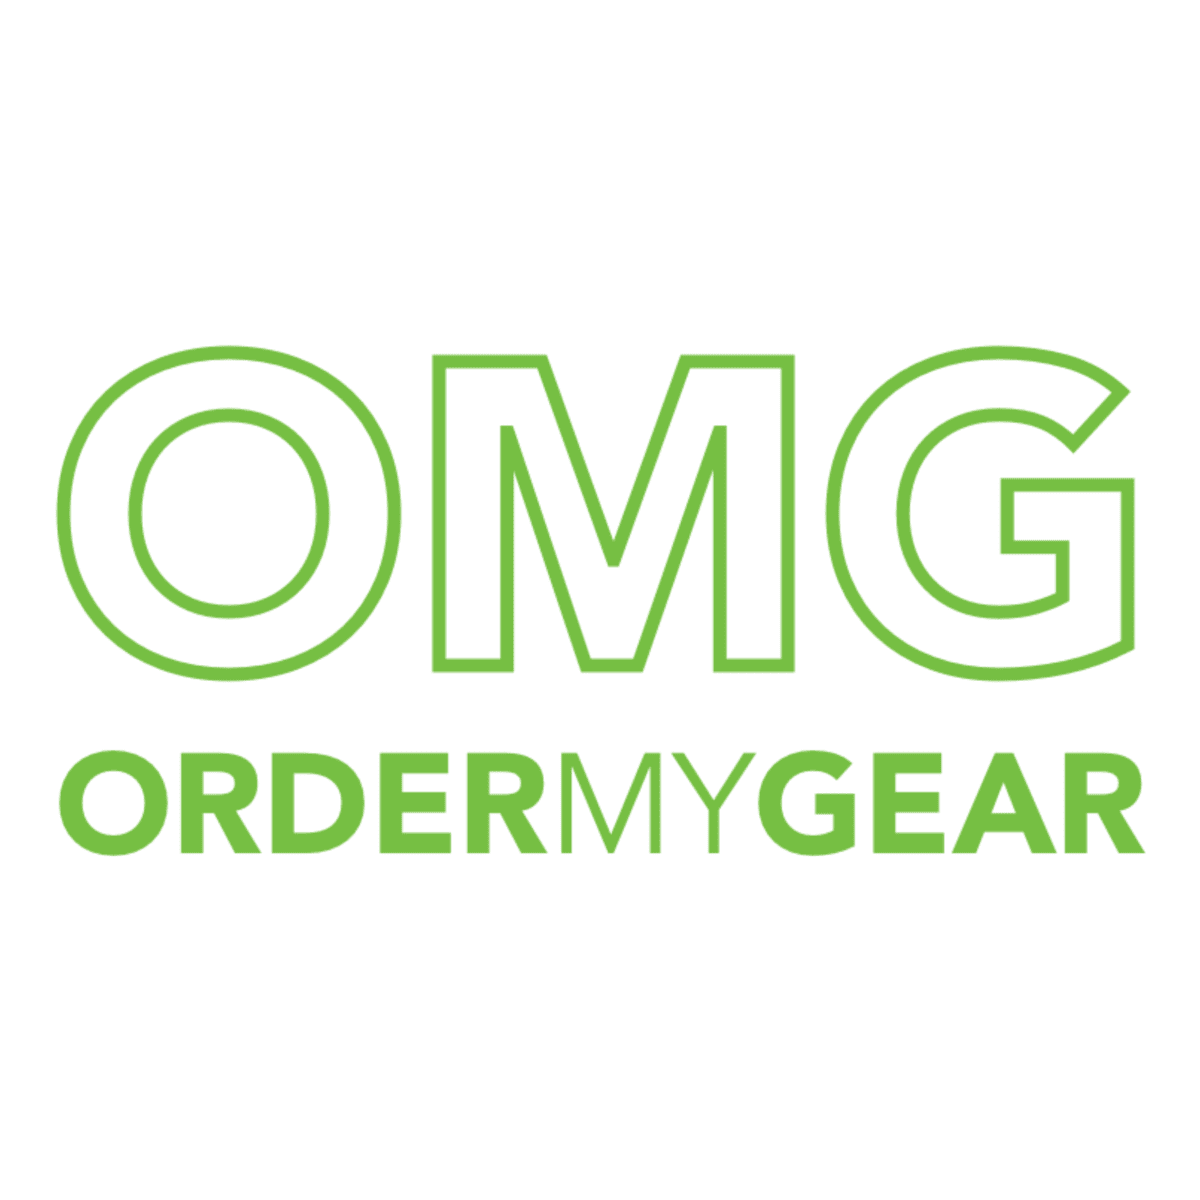 Order My Gear